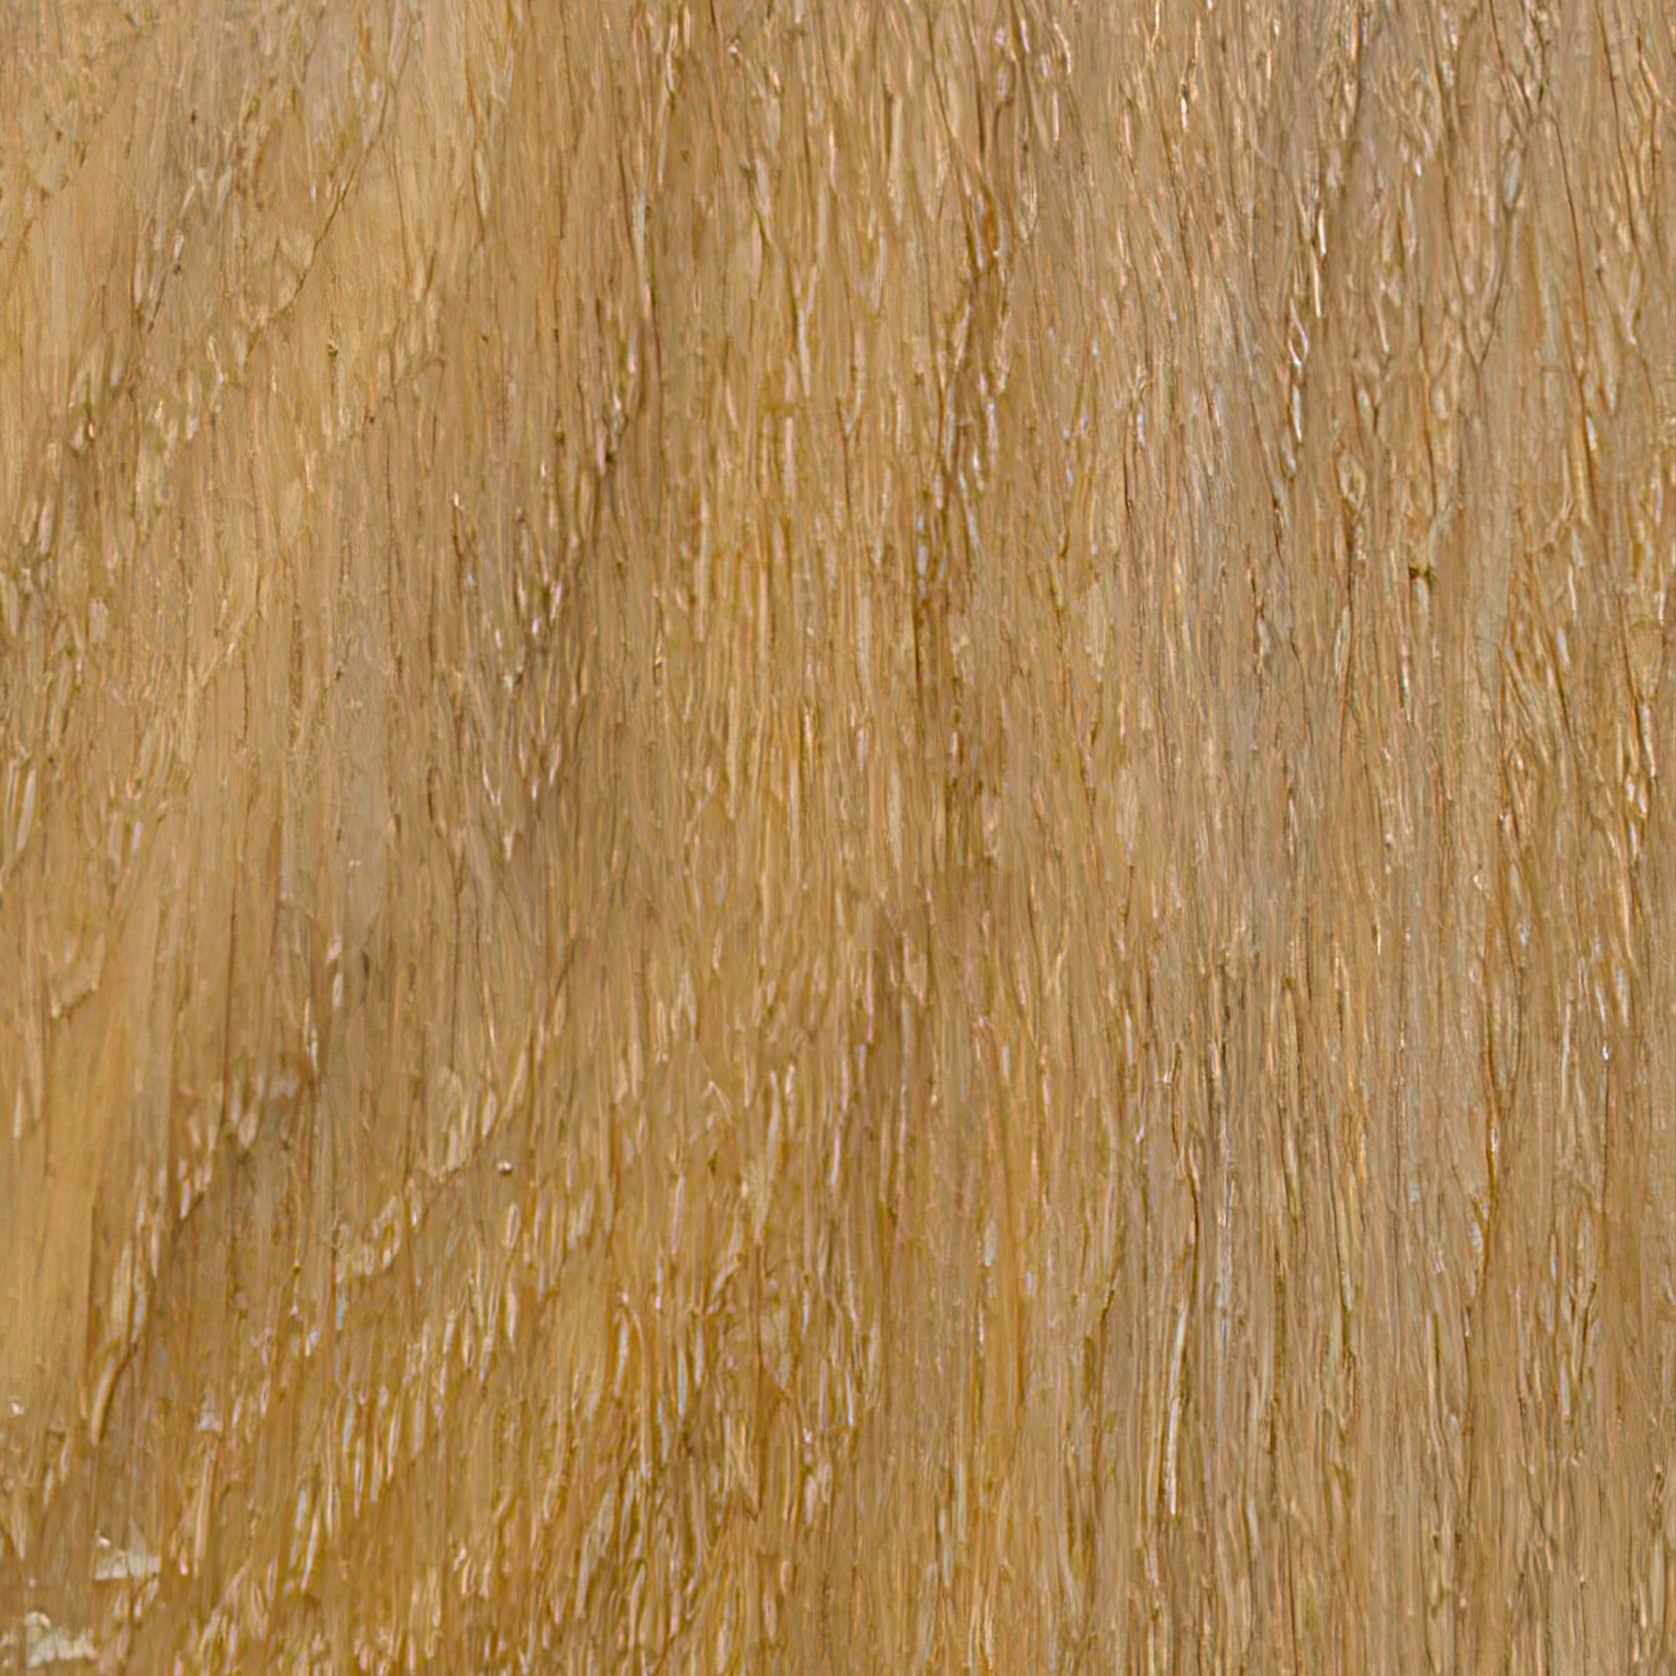 Isanti Oiled Wood Flooring gallery detail image